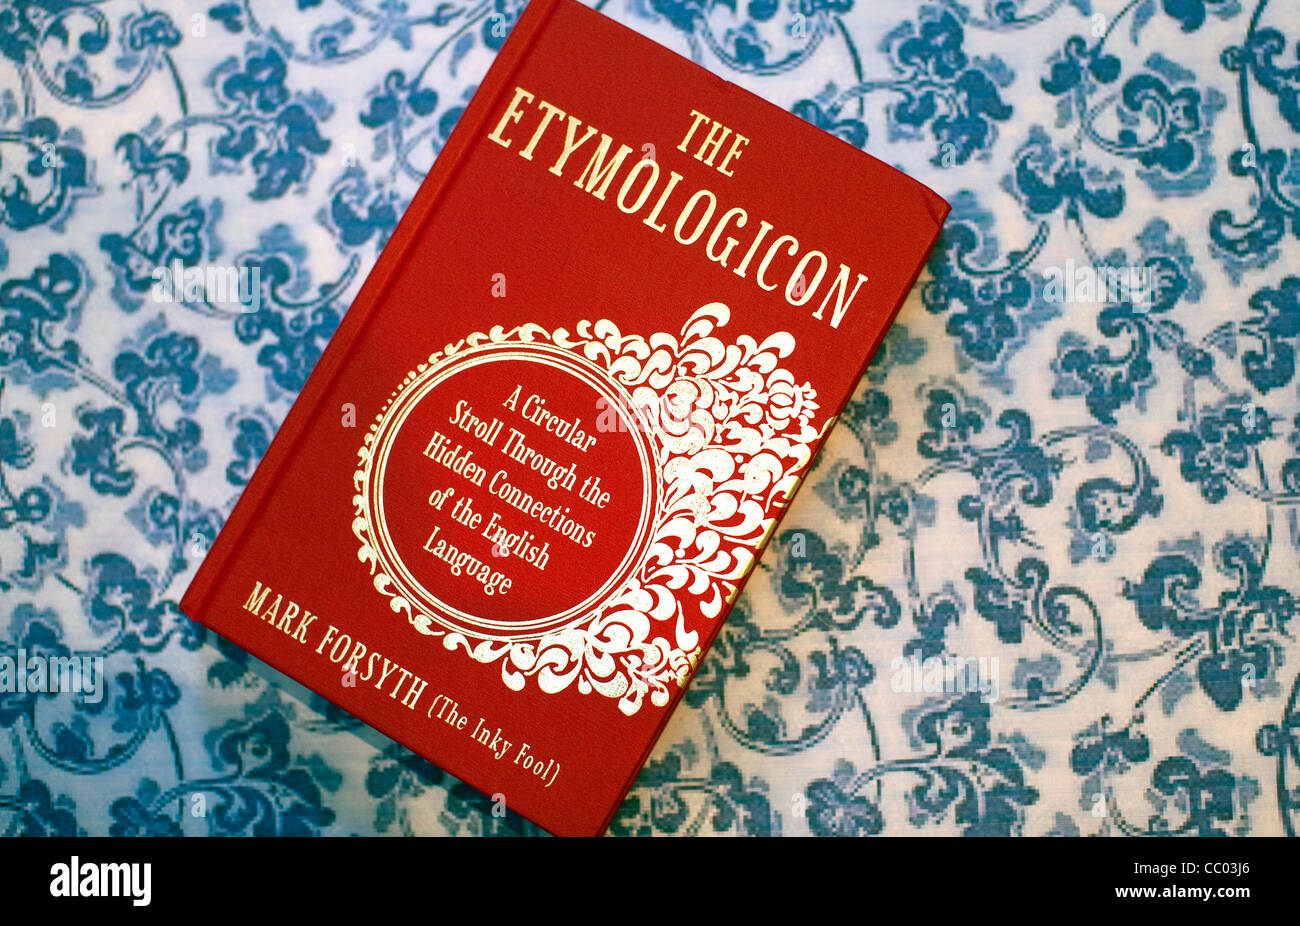 Il Etymologicon da Mark Forsyth - libro best-seller circa la lingua inglese Foto Stock